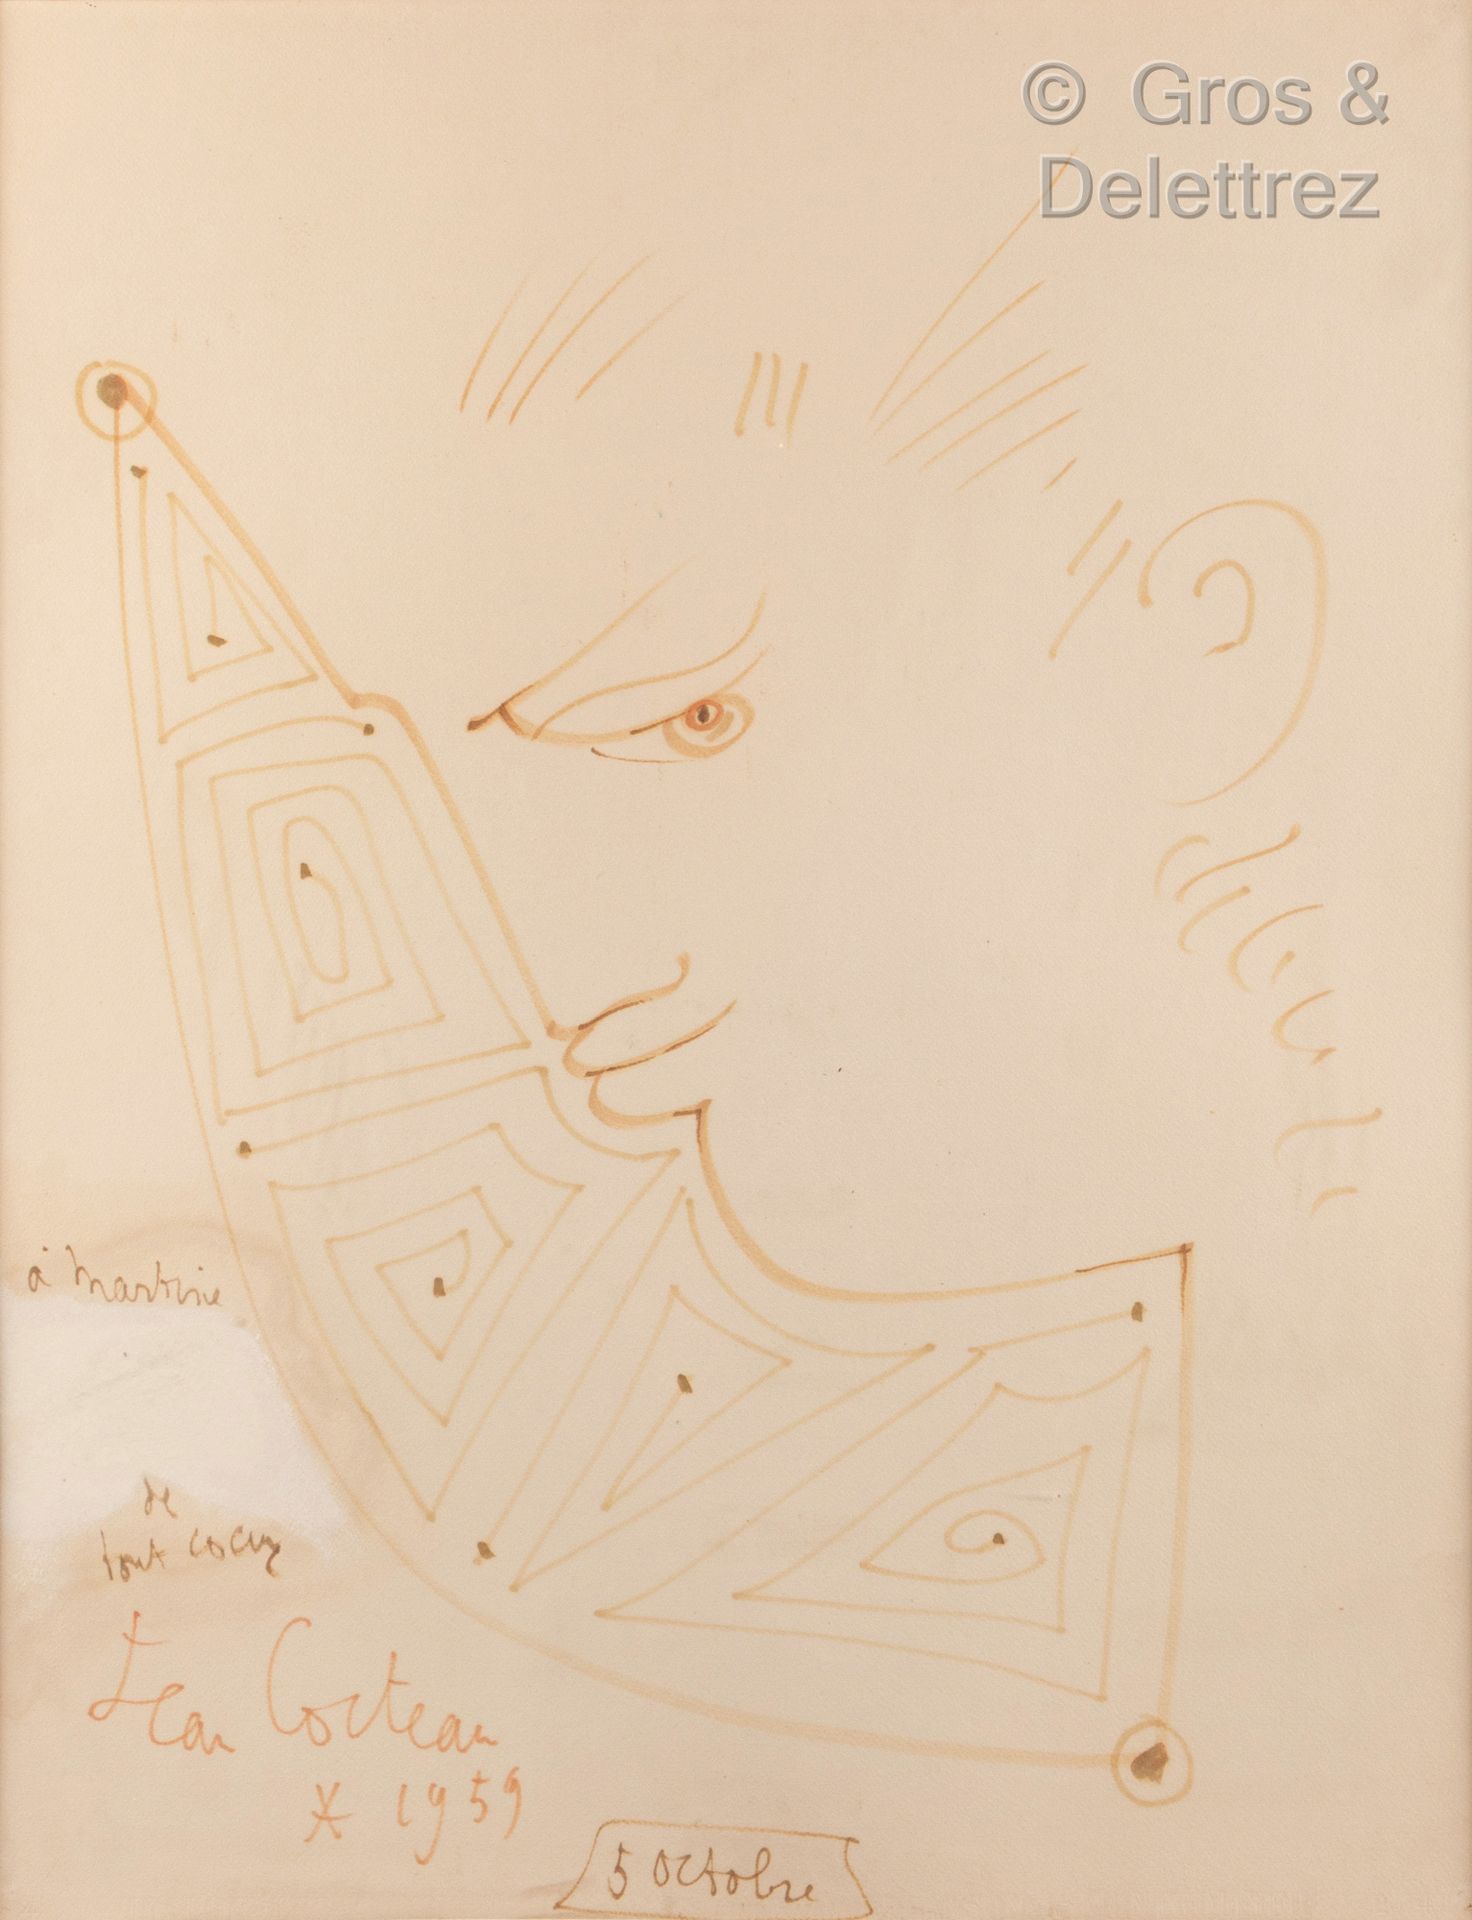 Jean COCTEAU (1889-1963) Rostro de perfil, 1959

Rotulador sobre papel. 

Firmad&hellip;